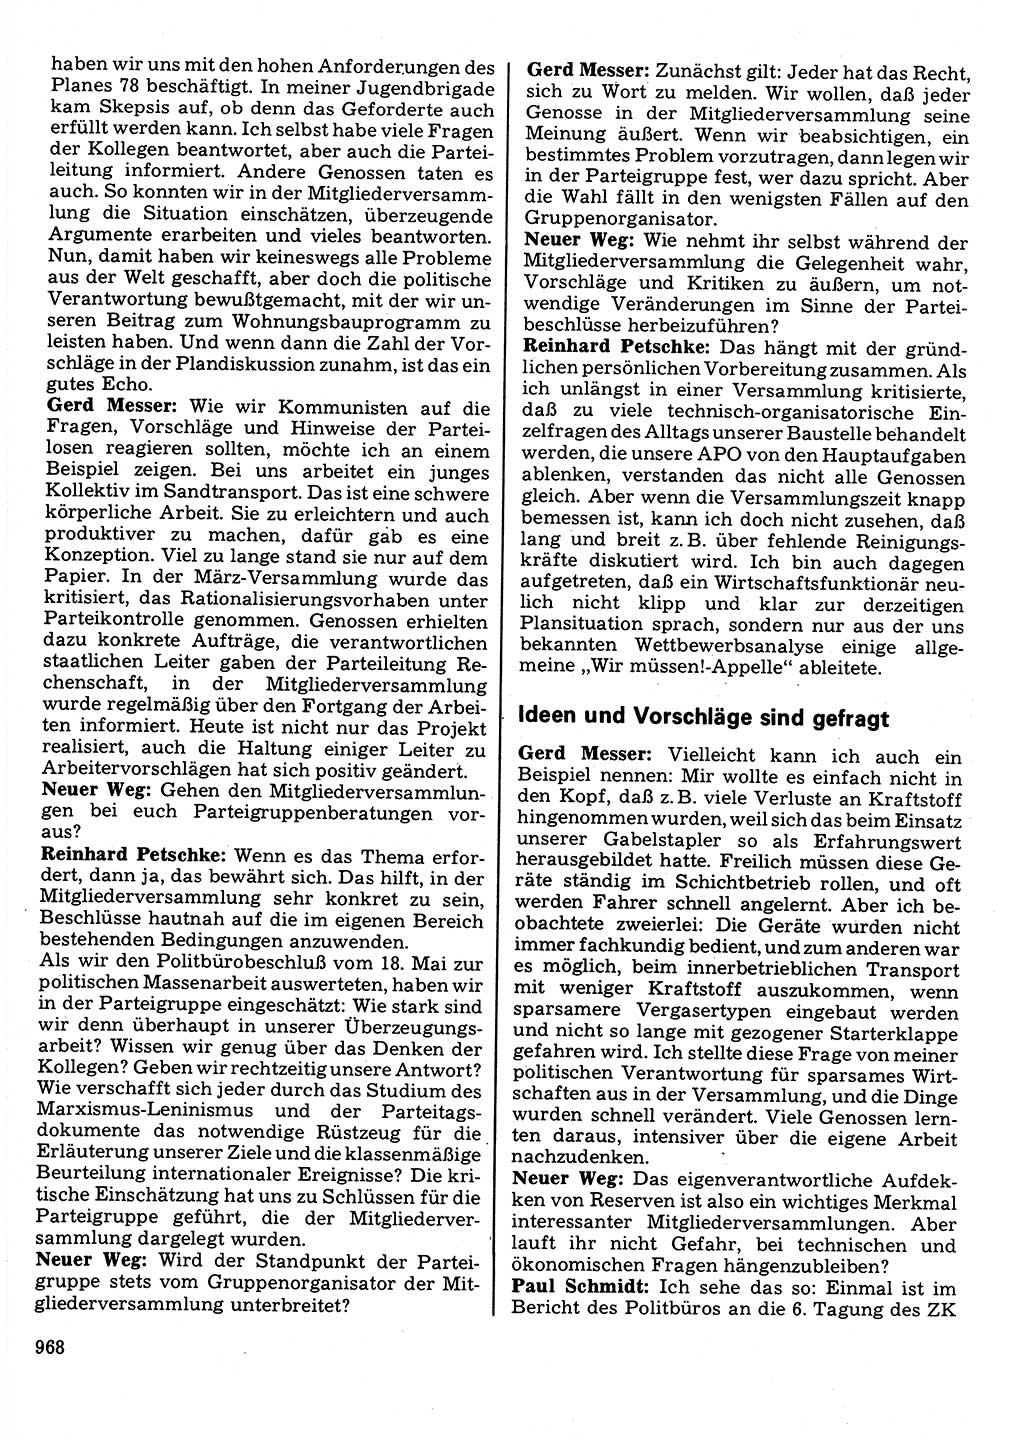 Neuer Weg (NW), Organ des Zentralkomitees (ZK) der SED (Sozialistische Einheitspartei Deutschlands) für Fragen des Parteilebens, 32. Jahrgang [Deutsche Demokratische Republik (DDR)] 1977, Seite 968 (NW ZK SED DDR 1977, S. 968)